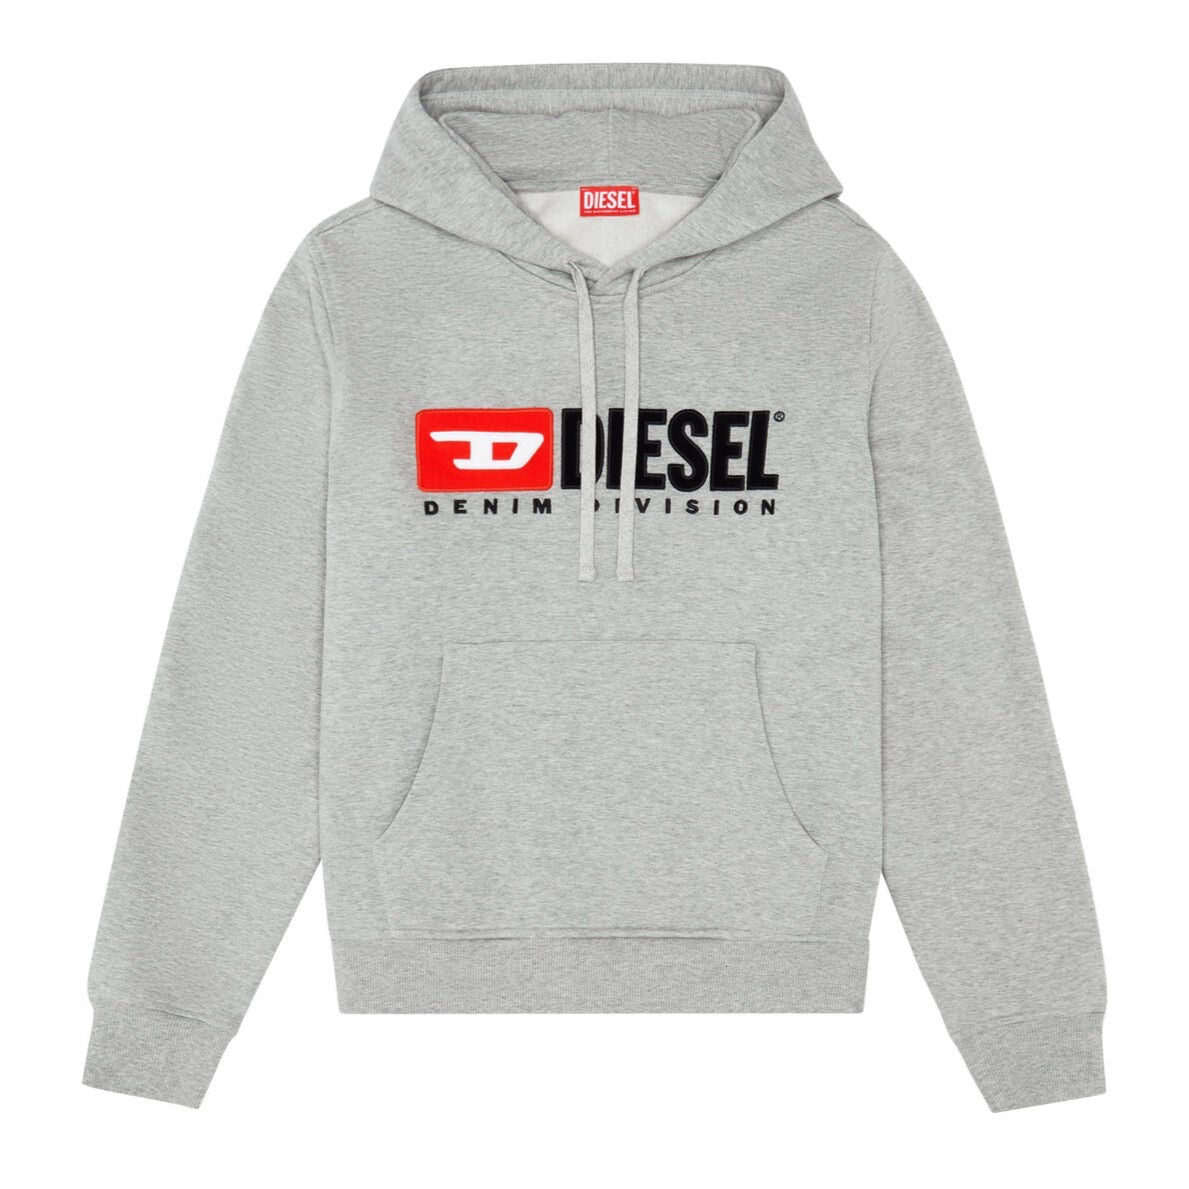 diesel-hoodie-front-side